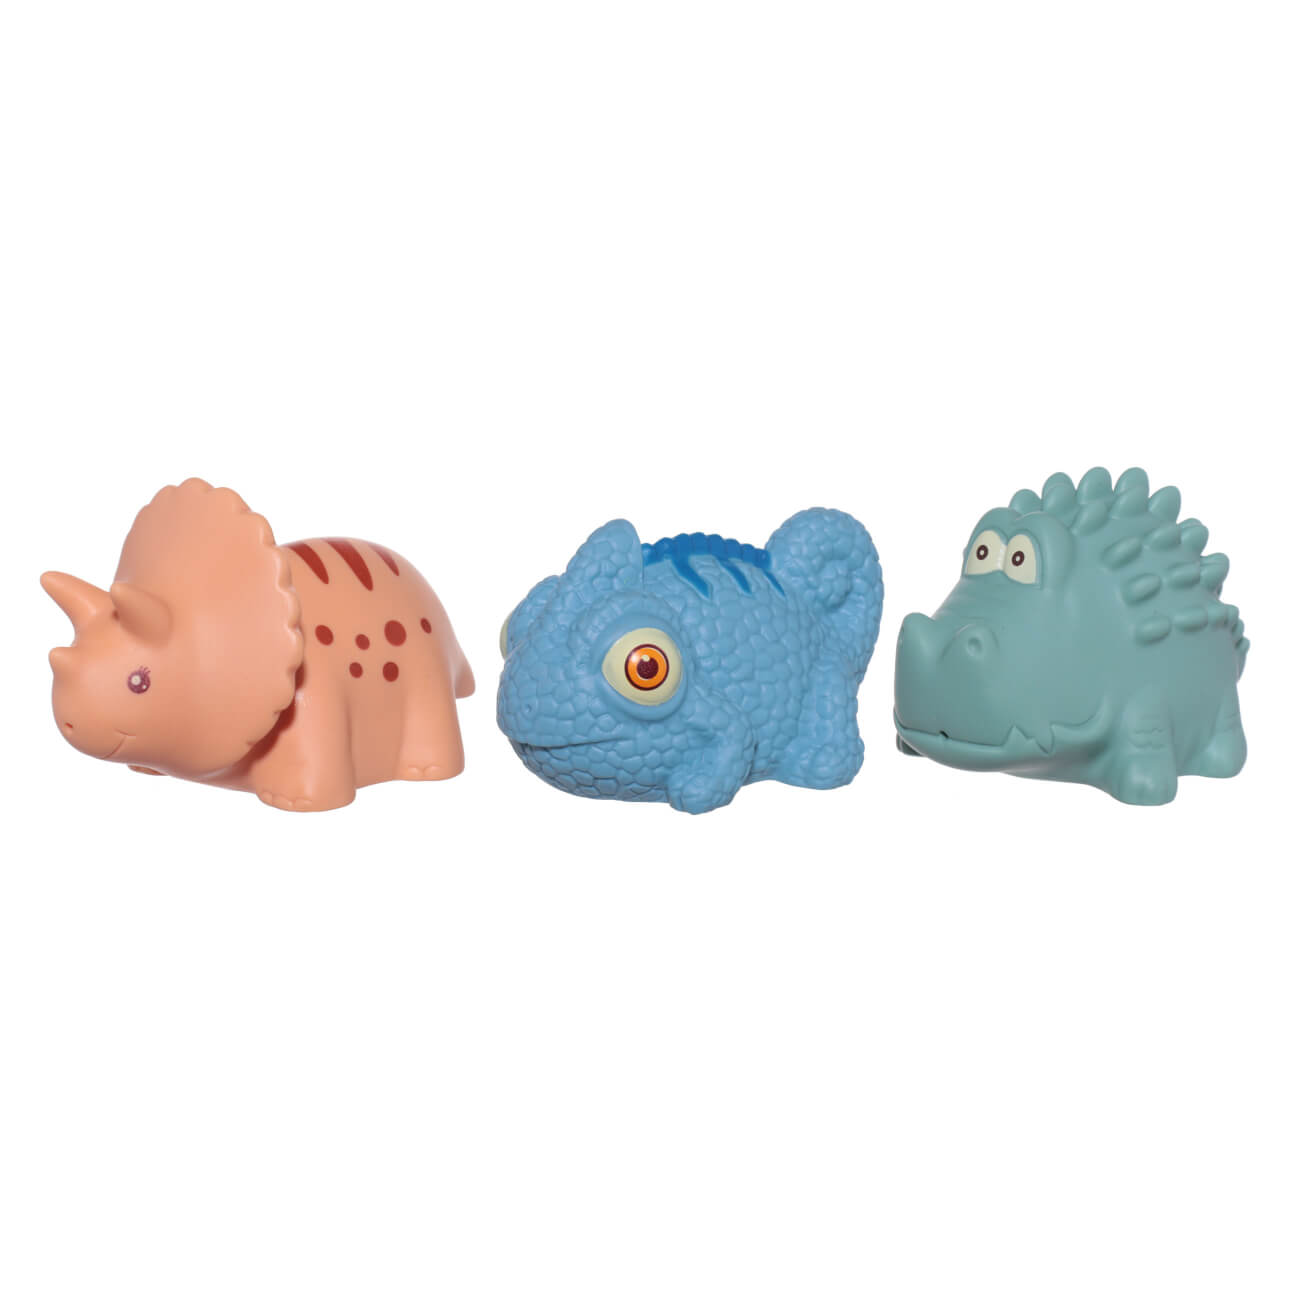 Набор игрушек для купания, 3 пр, ПВХ, цветной, Хамелеон/Динозавр/Крокодил, Kiddy игрушка для купания 10х6 см неваляшка брызгалка силикон серая мишка kiddy